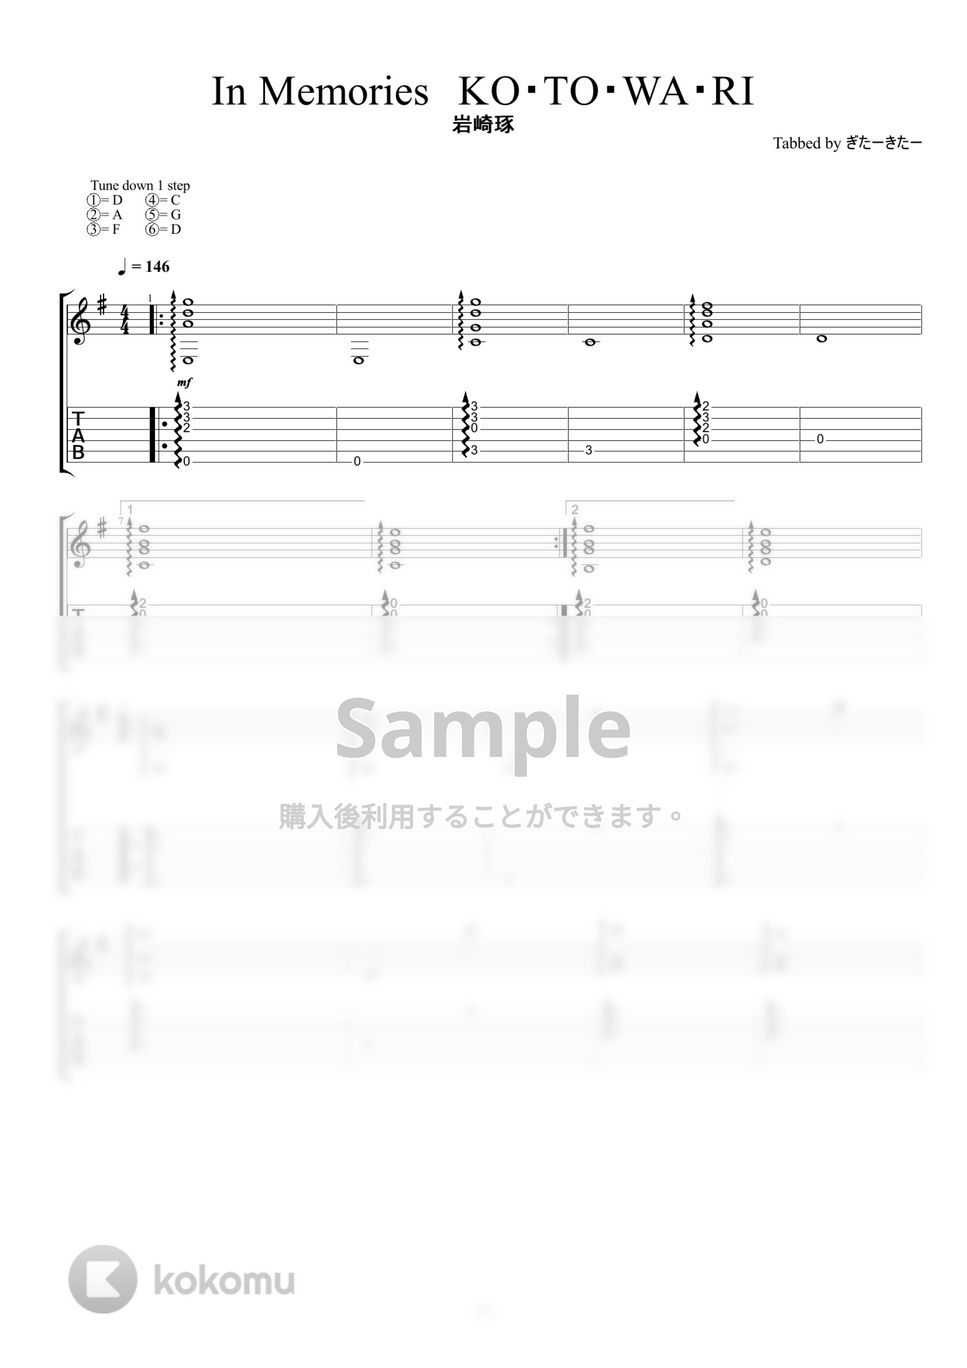 るろうに剣心 - In Memories KOTOWARI (ソロギターアレンジ) by ぎたーきたー